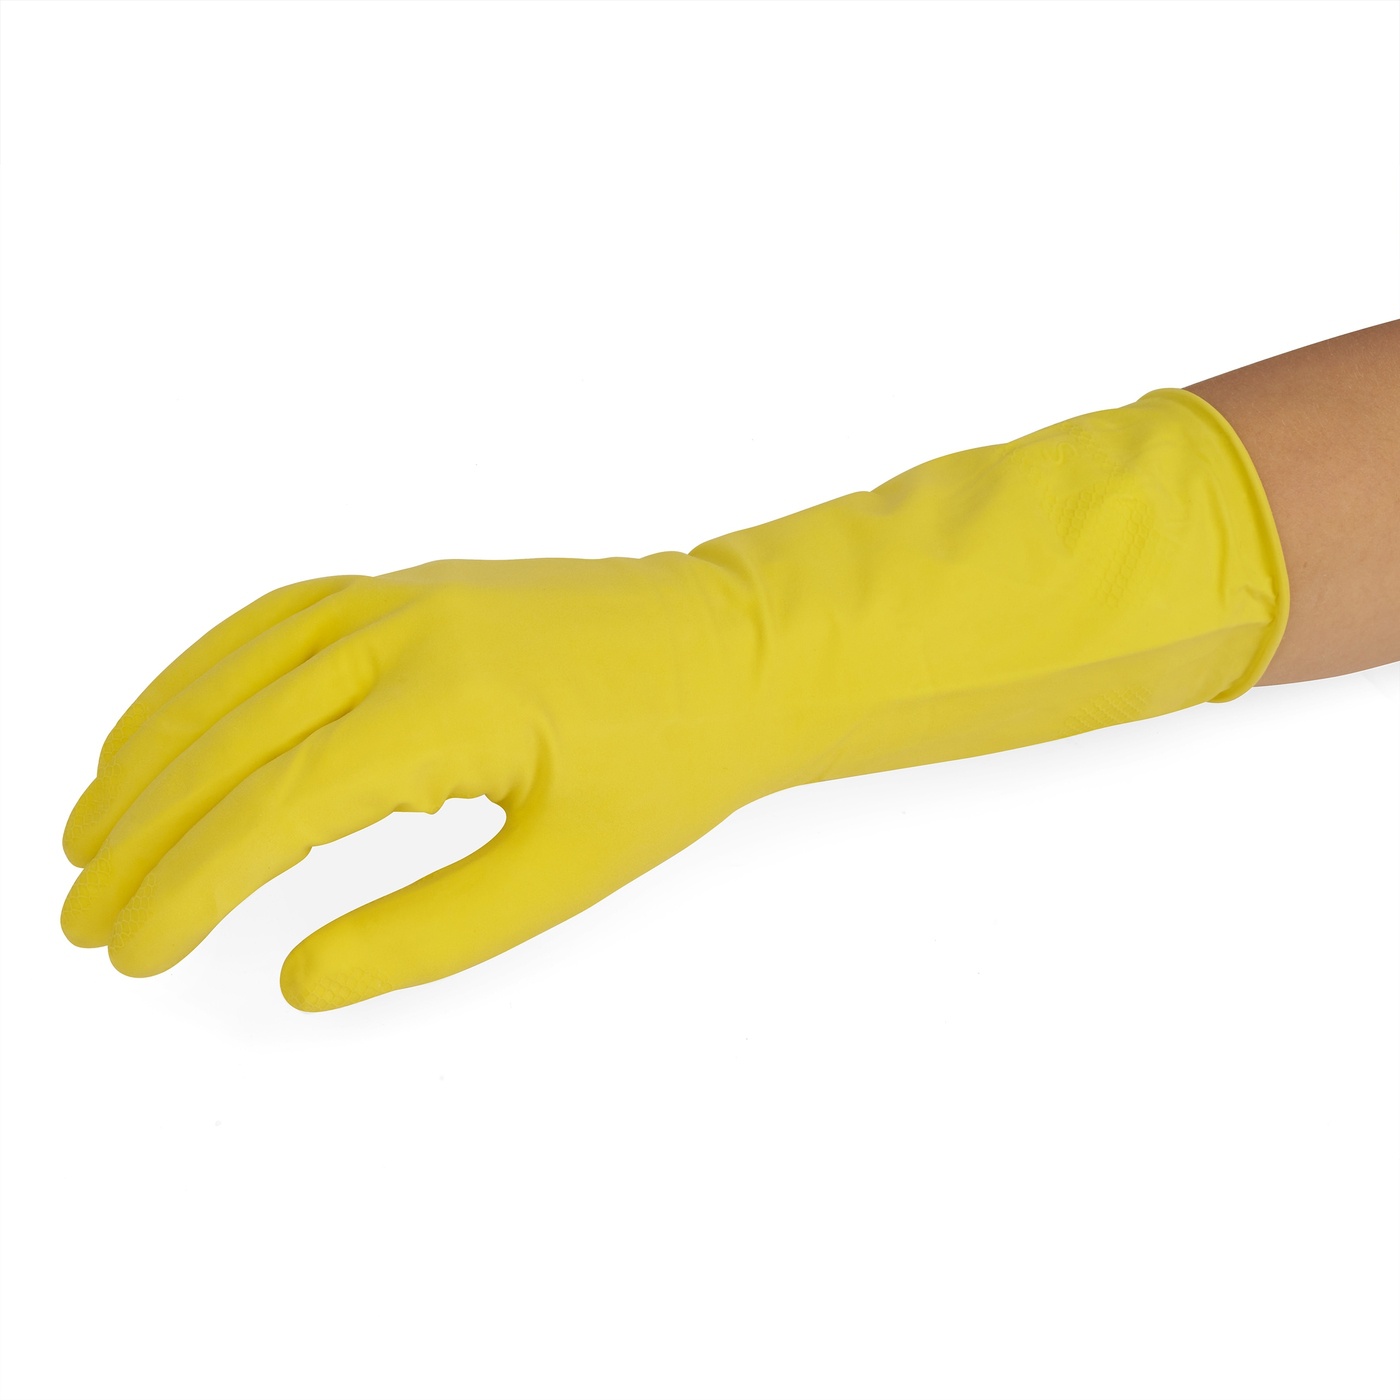 Gumené žlté rukavice York veľkosť M